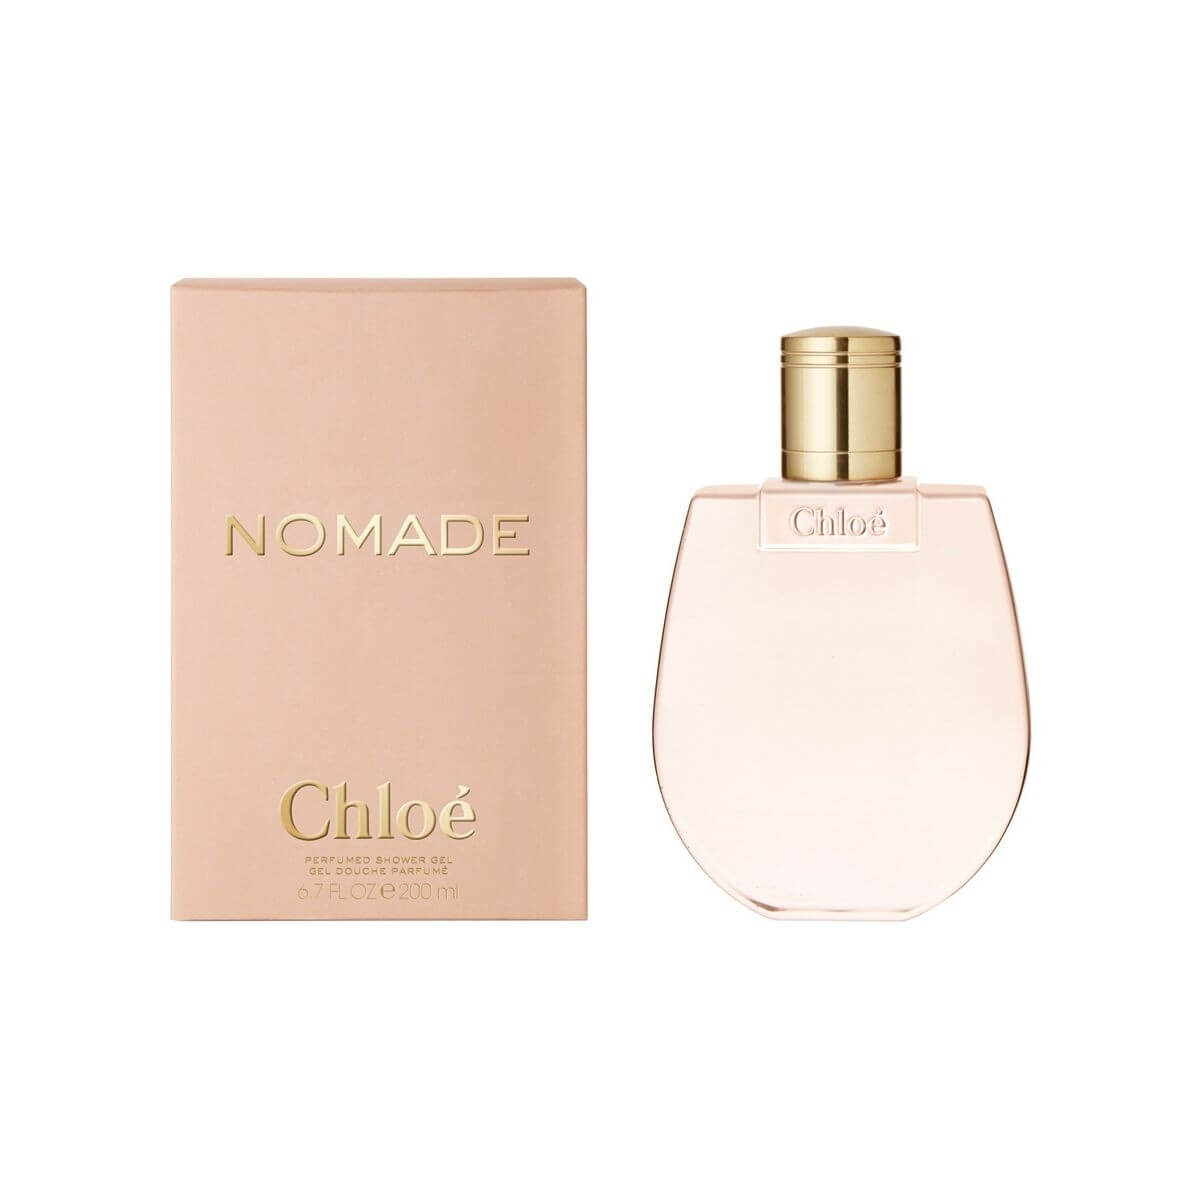 Chloé Nomade - sprchový gel 200 ml